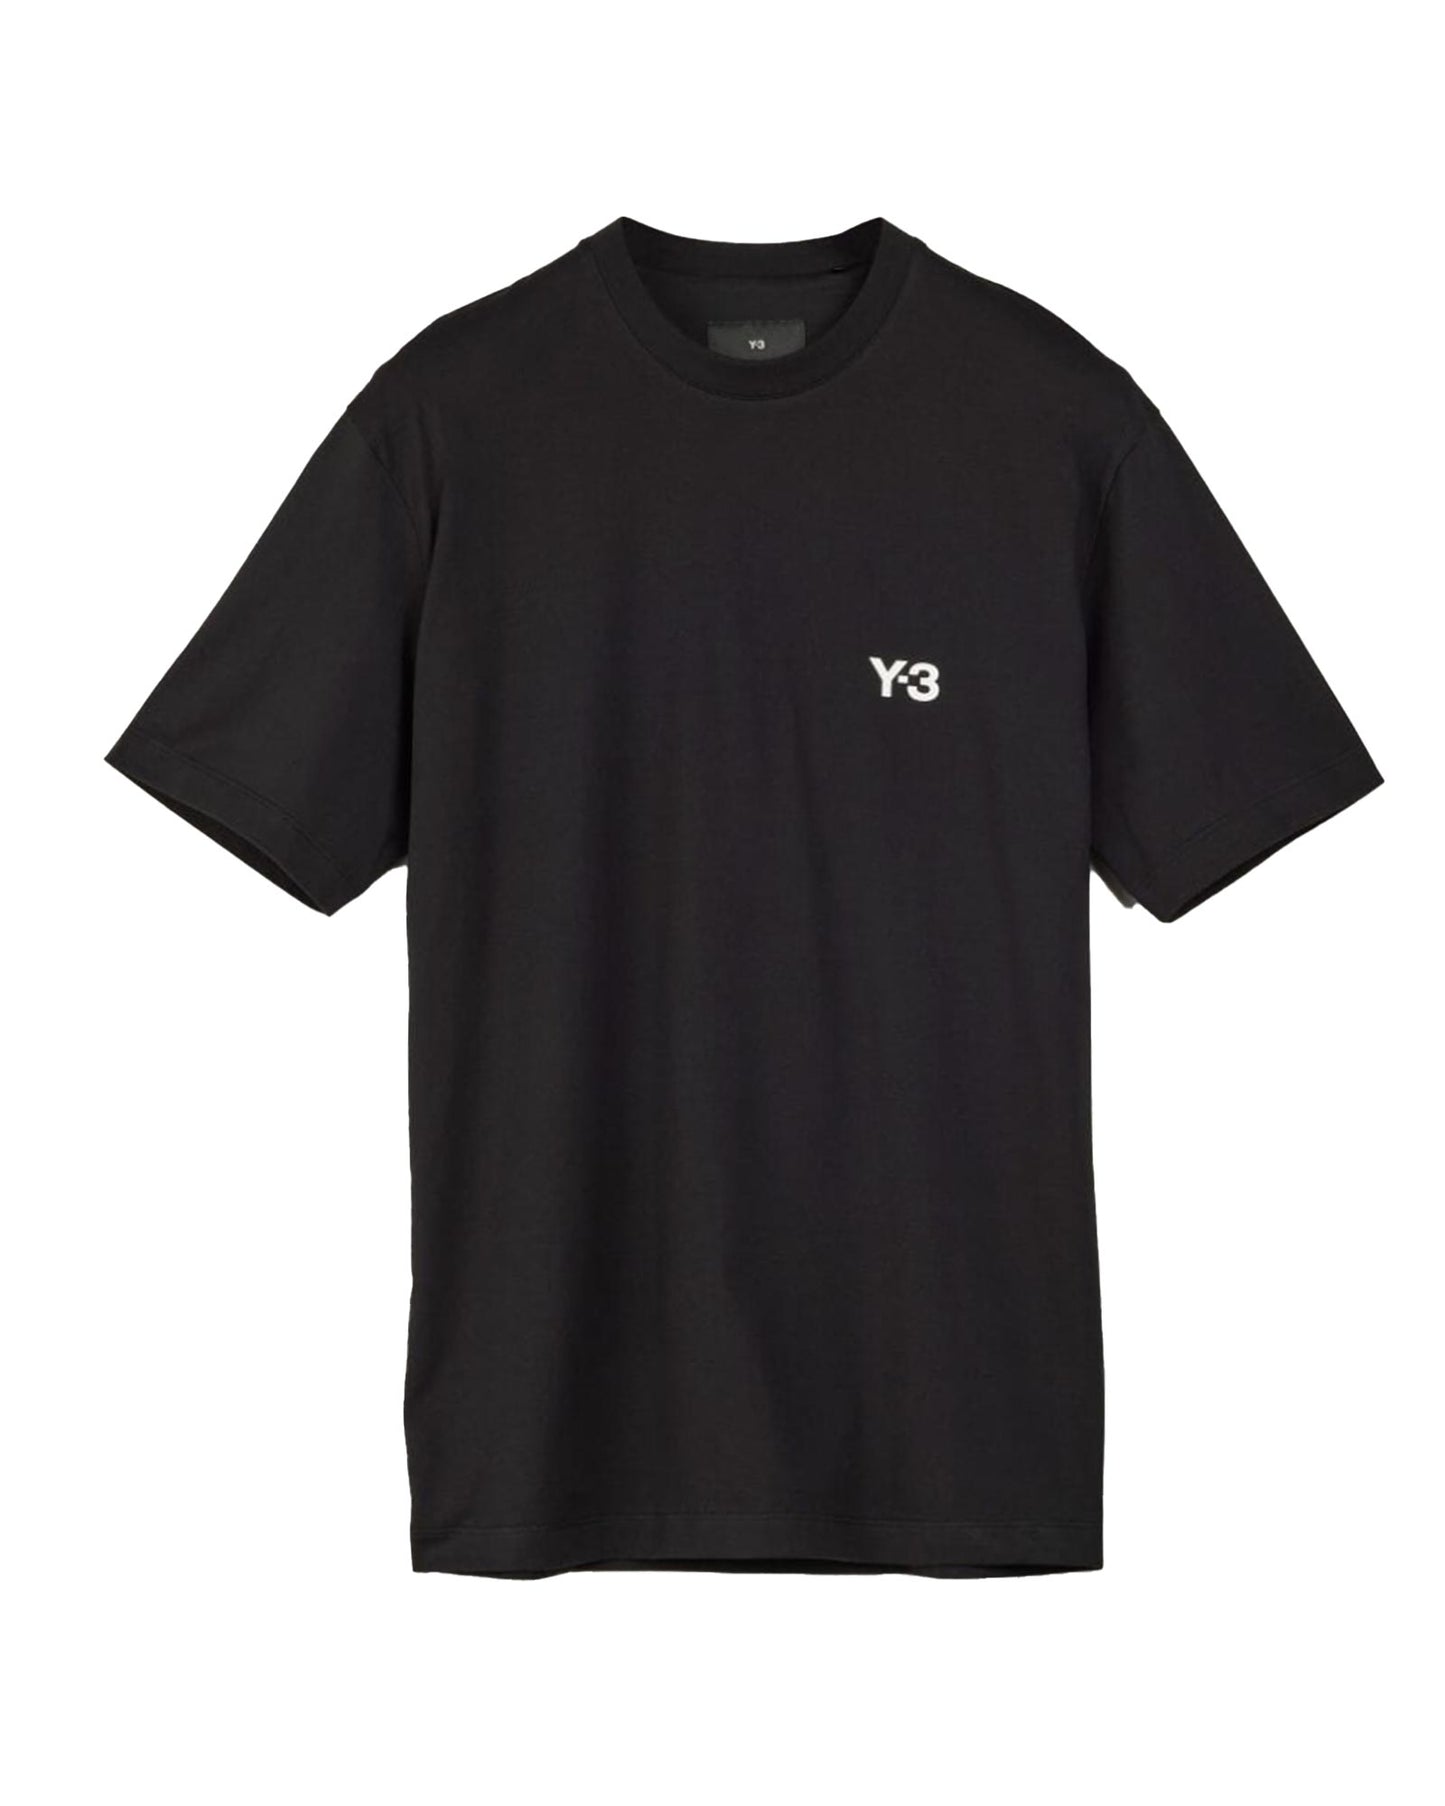 ワイスリー/Y3-S24-0000-414/RM MERCH TEE/Tシャツ/Black